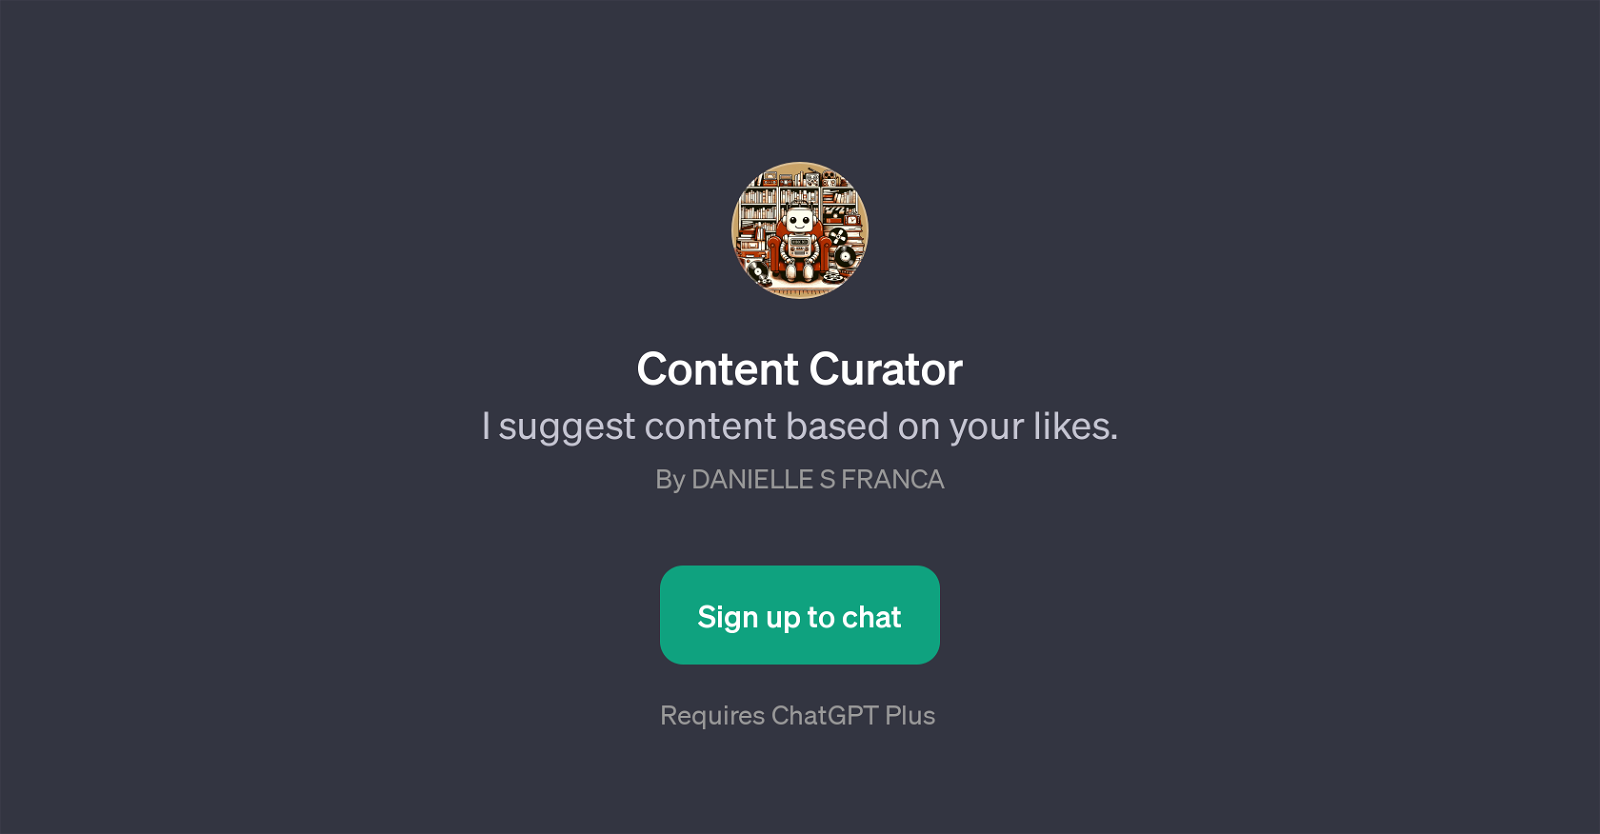 Content Curator website